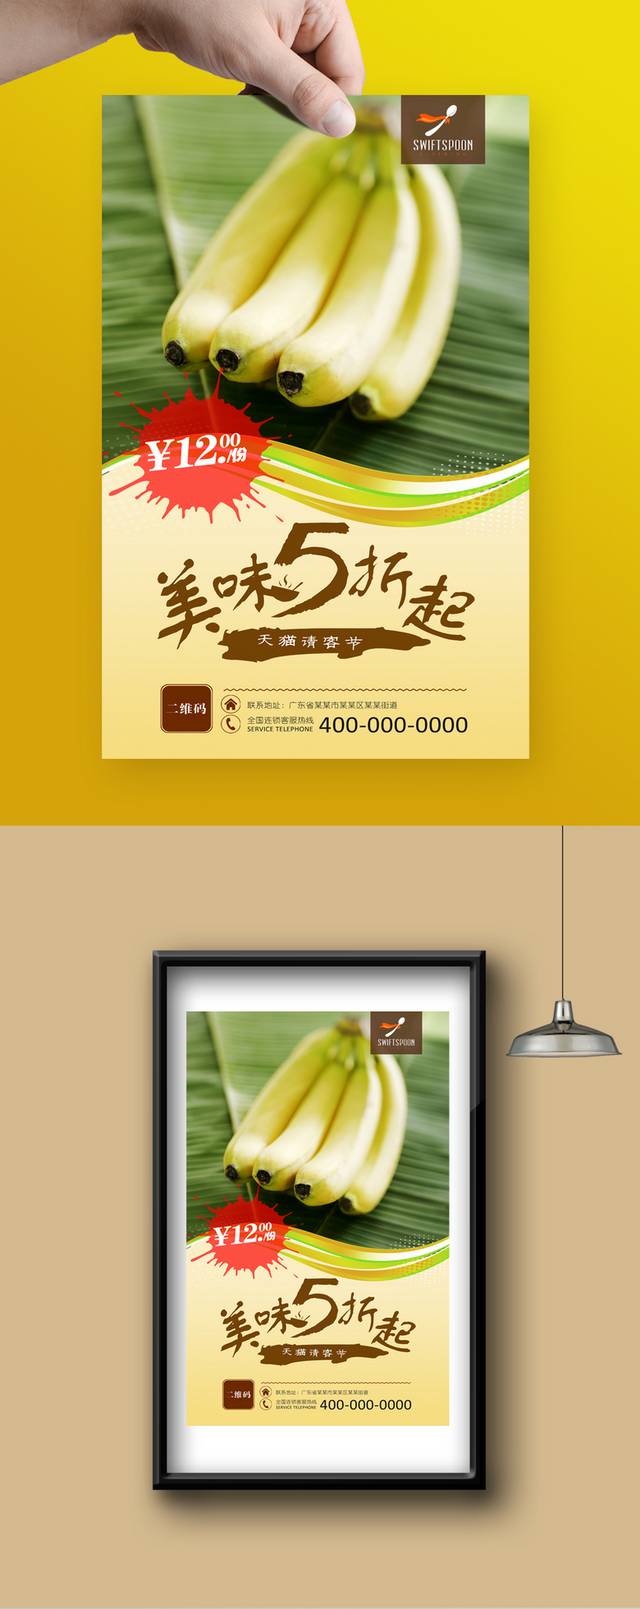 水果店香蕉宣传海报设计